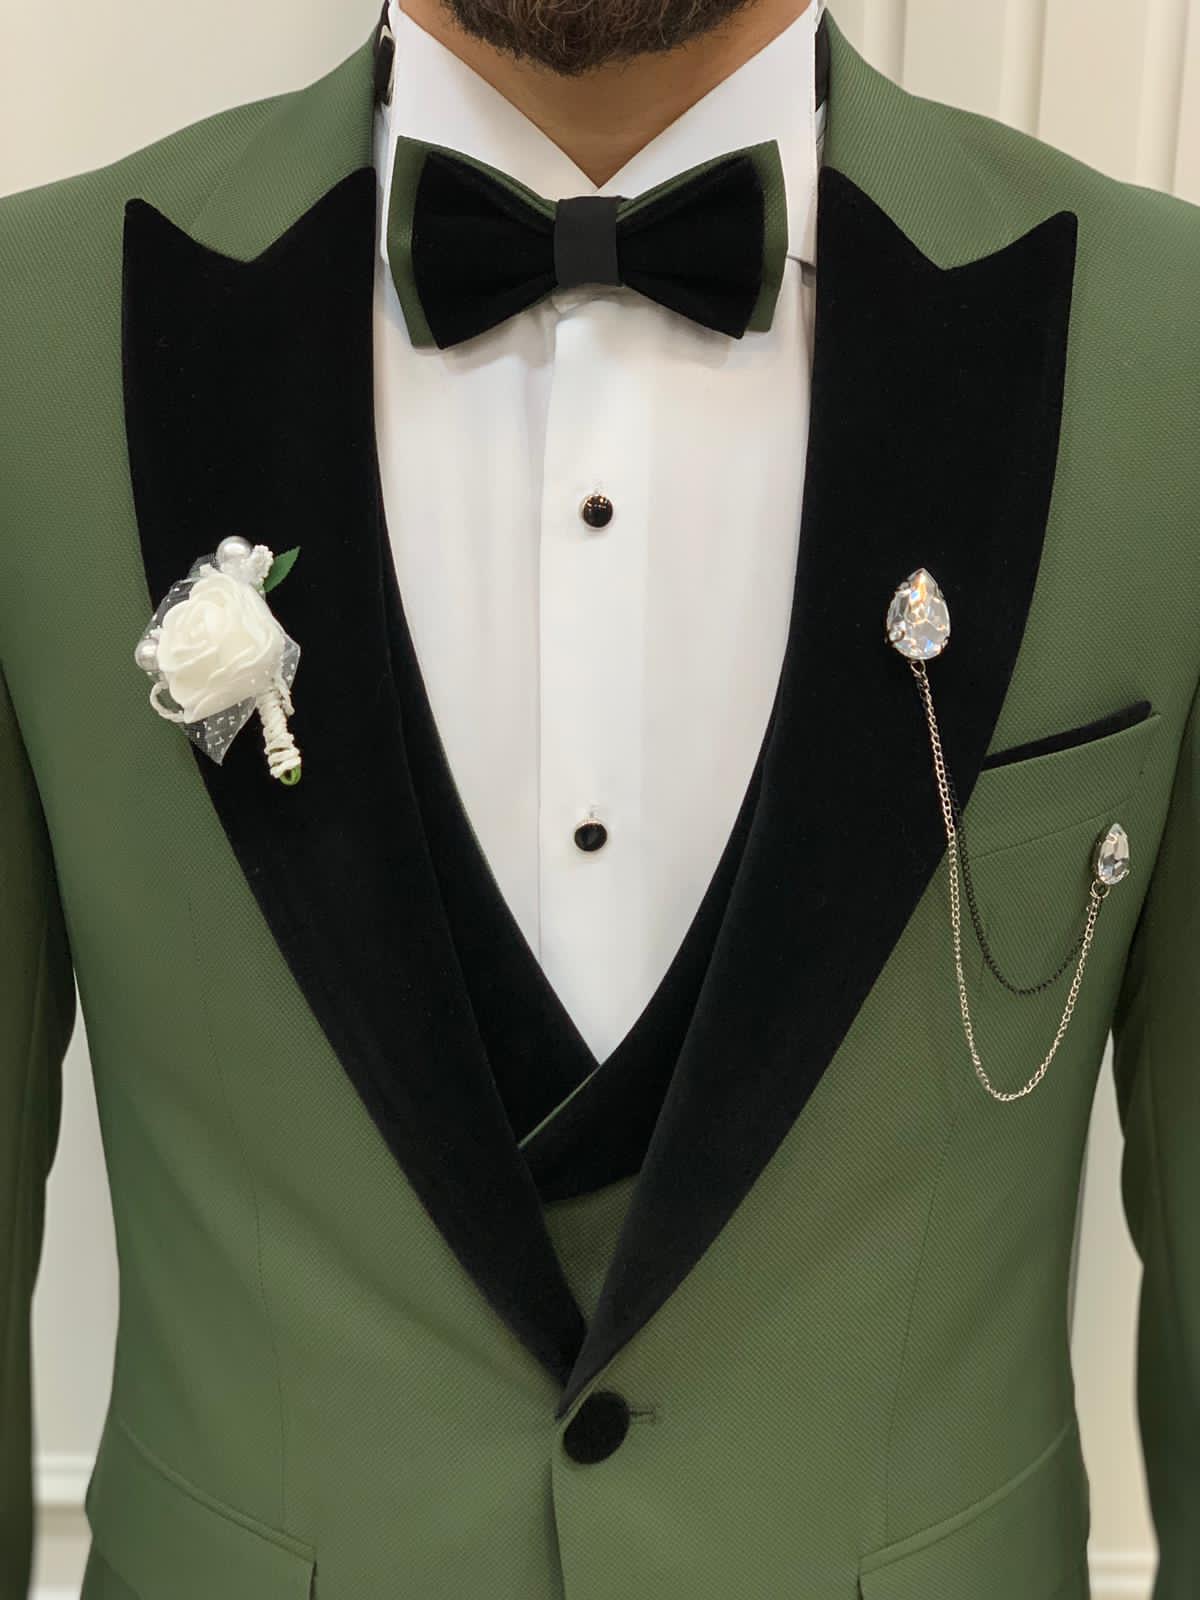 The Bold Green Prom Tuxedo from HolloMen